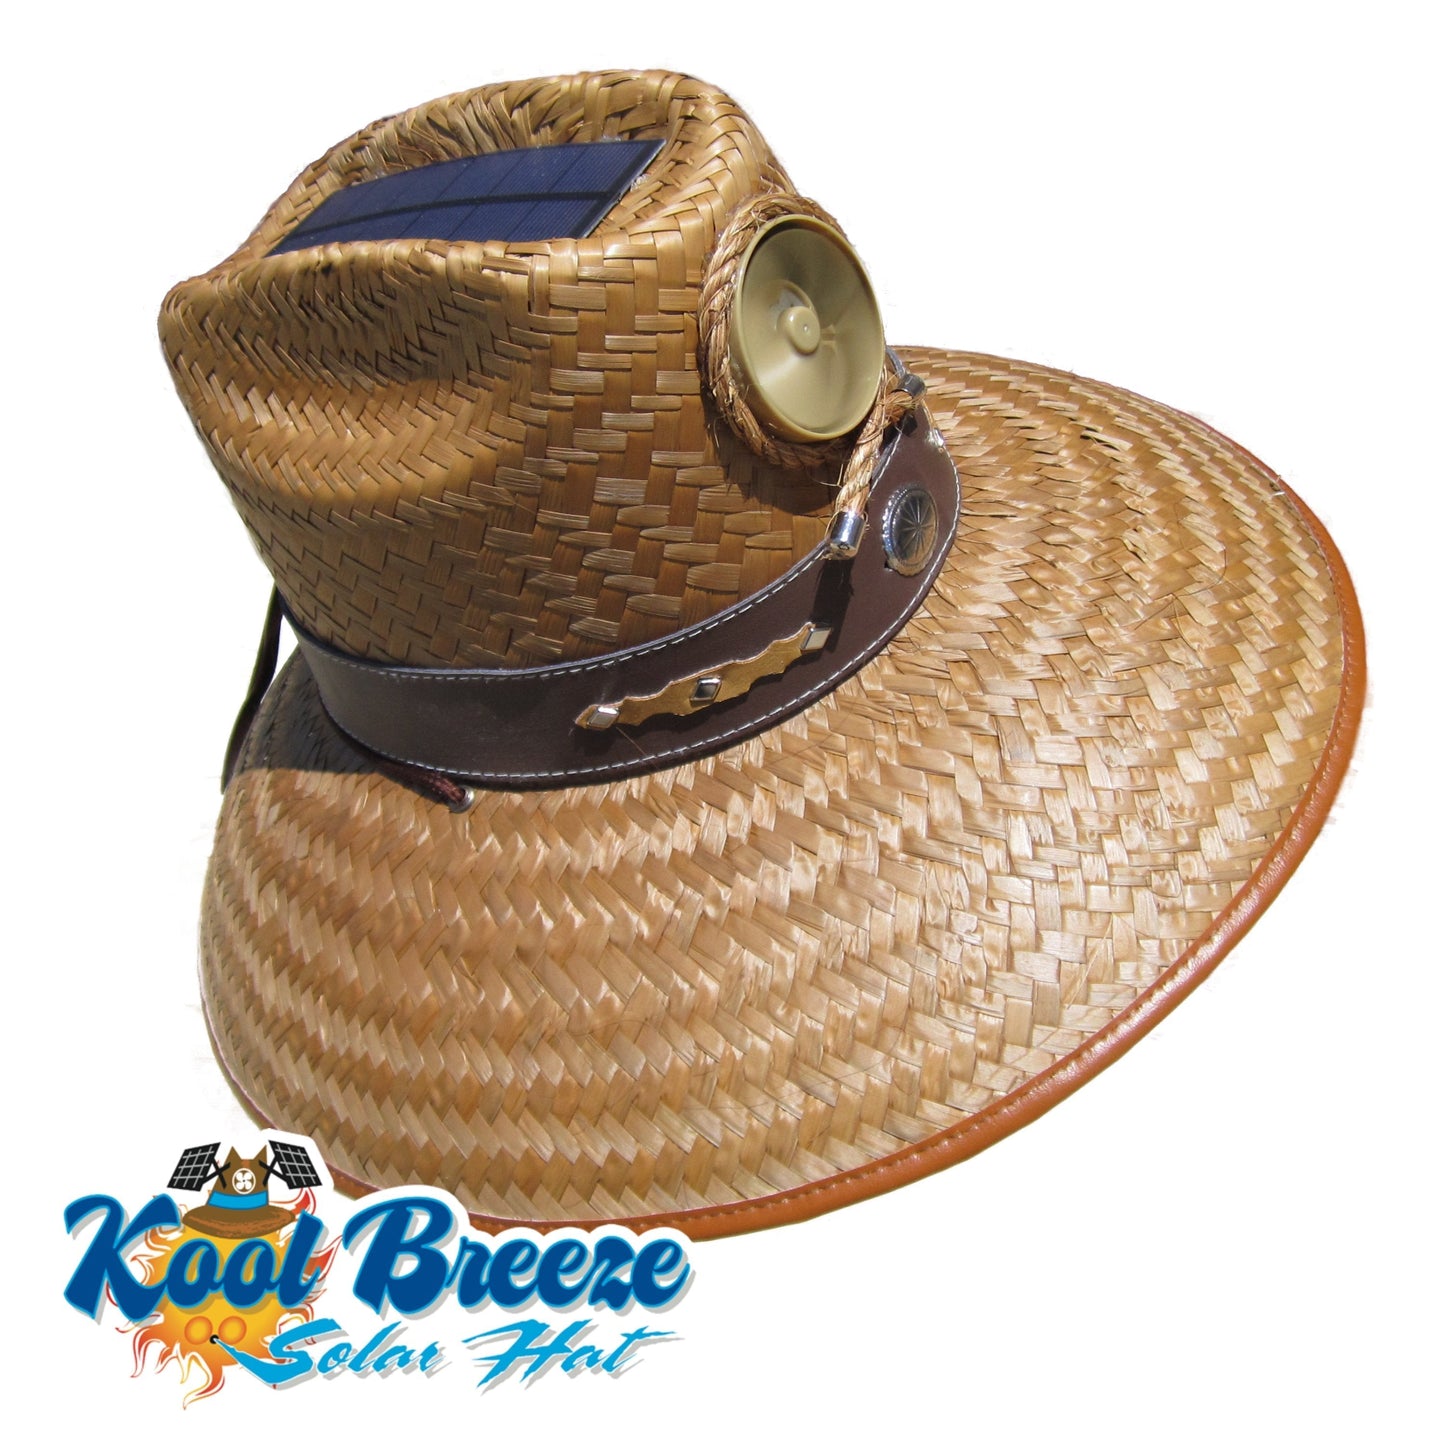 Kool Breeze Solar Men's Thurman Straw Hat (Band) – Kool Breeze